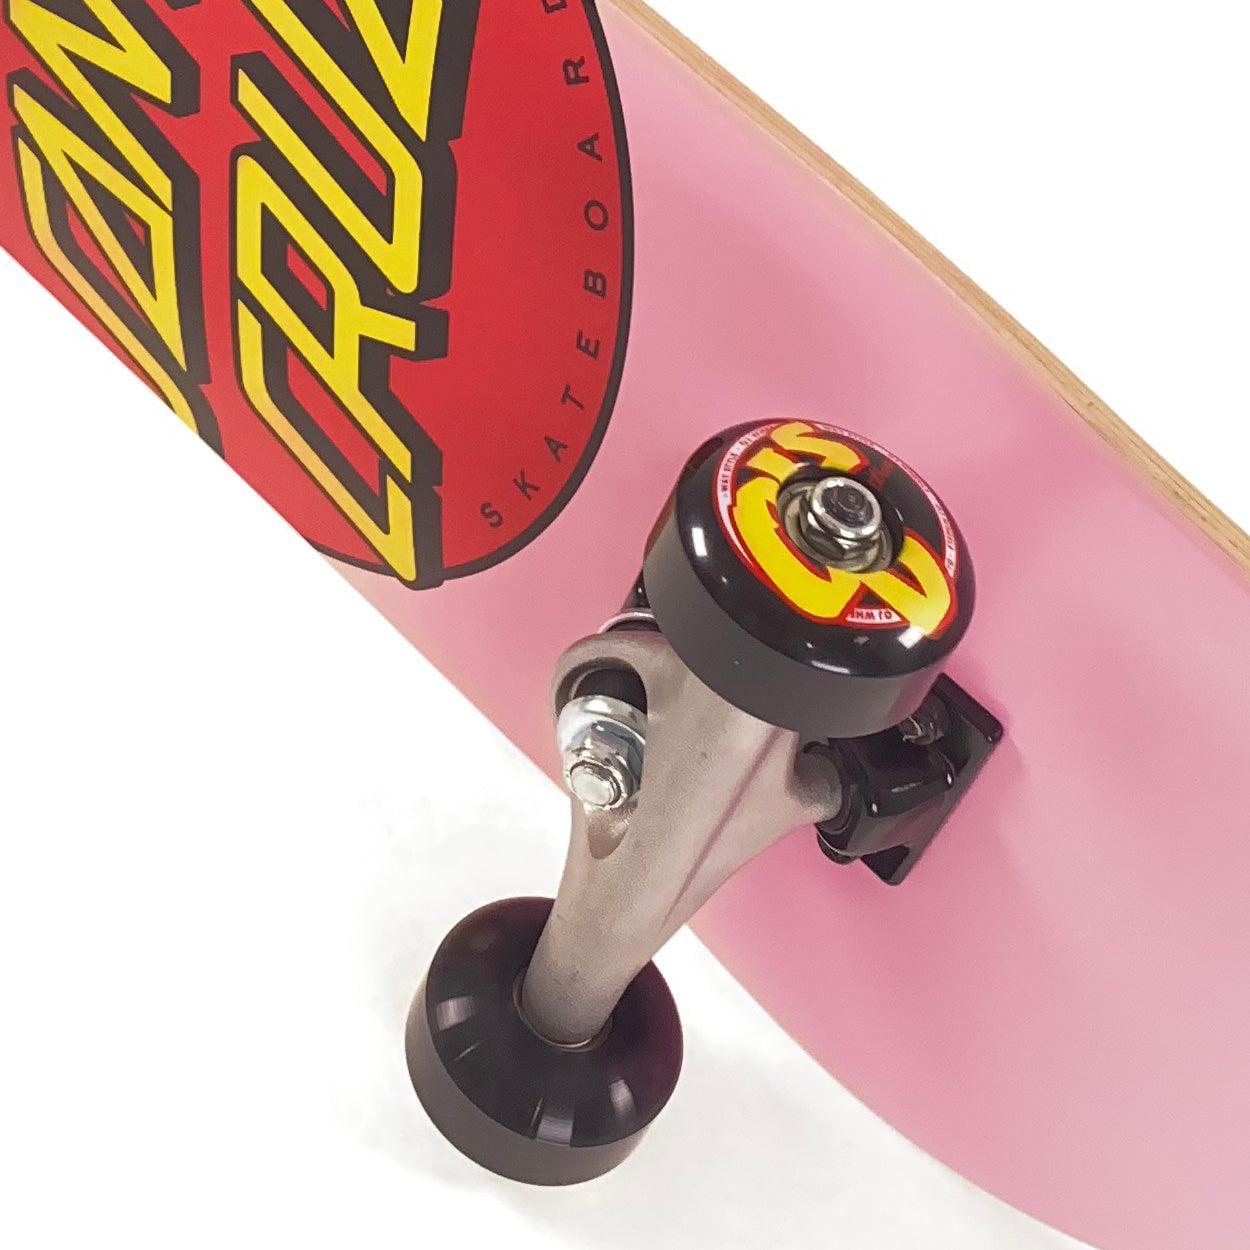 Santa Cruz - 7.50 - Classic Micro Sk8 Dot Complete Skateboard - Pink - Prime Delux Store